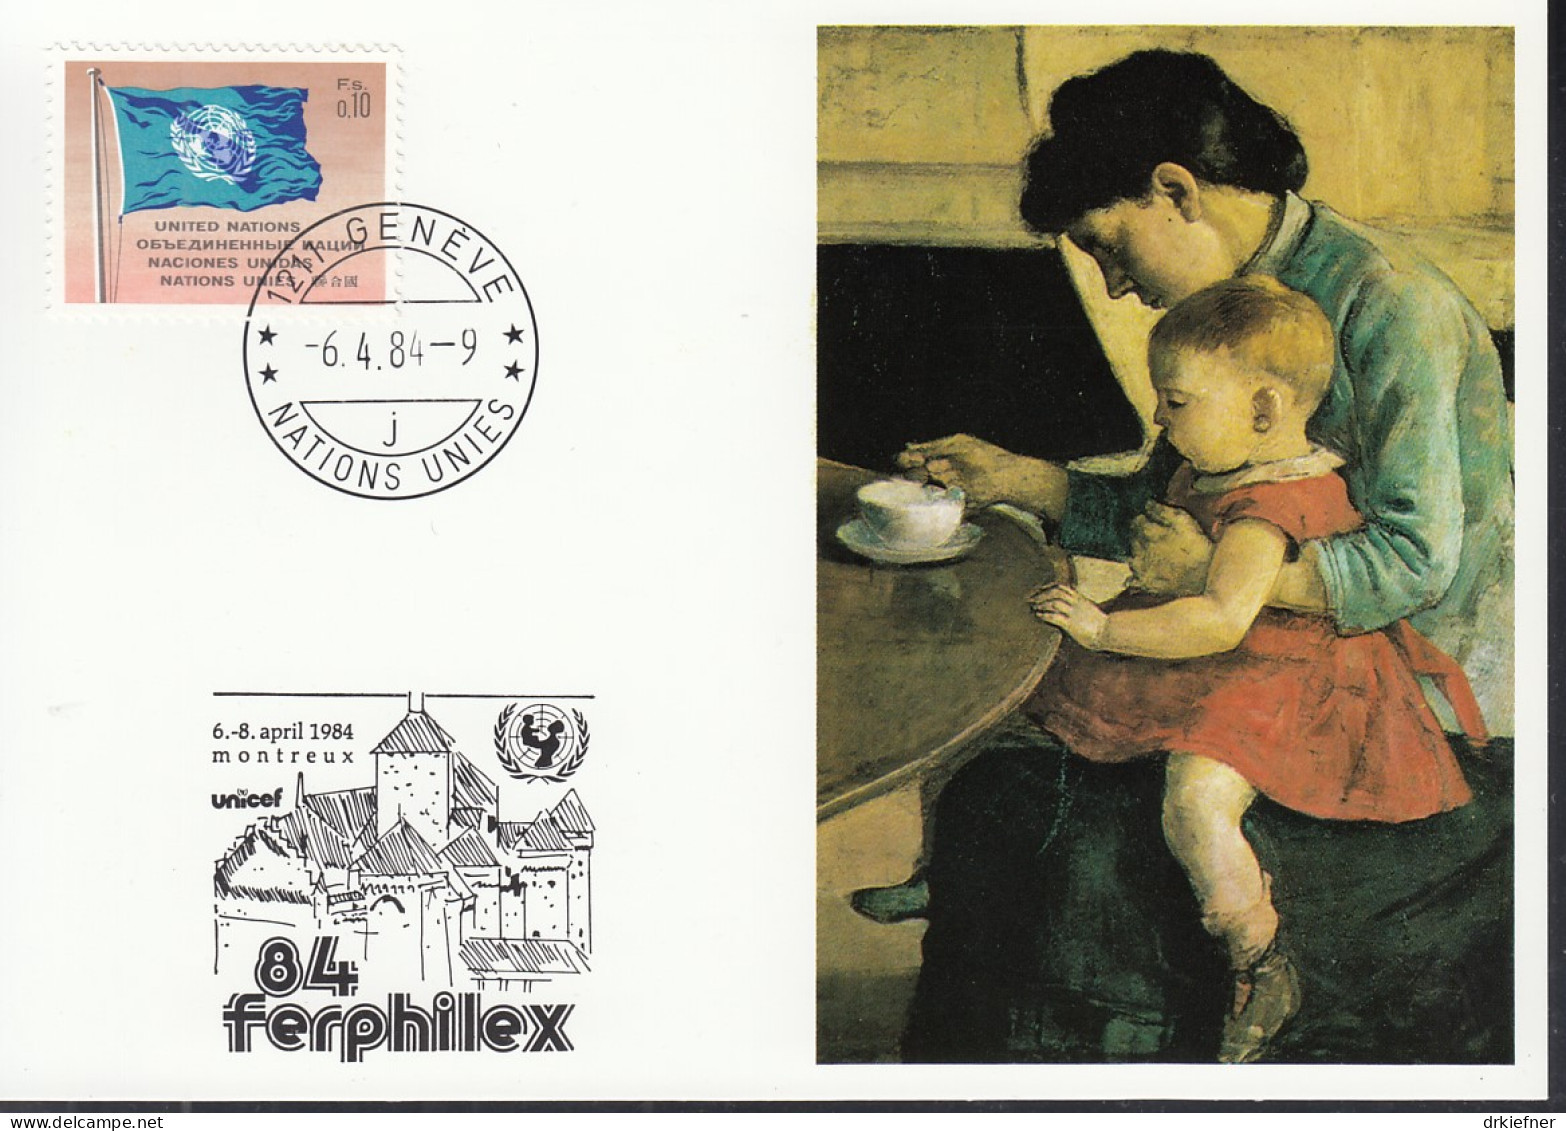 UNO NEW YORK  UNICEF-Kunstkarte, Mutter Und Kind Von Ferdinand Hodler, Aussellungskarte FERPHILEX Montreux, St: 6.4.1984 - Briefe U. Dokumente